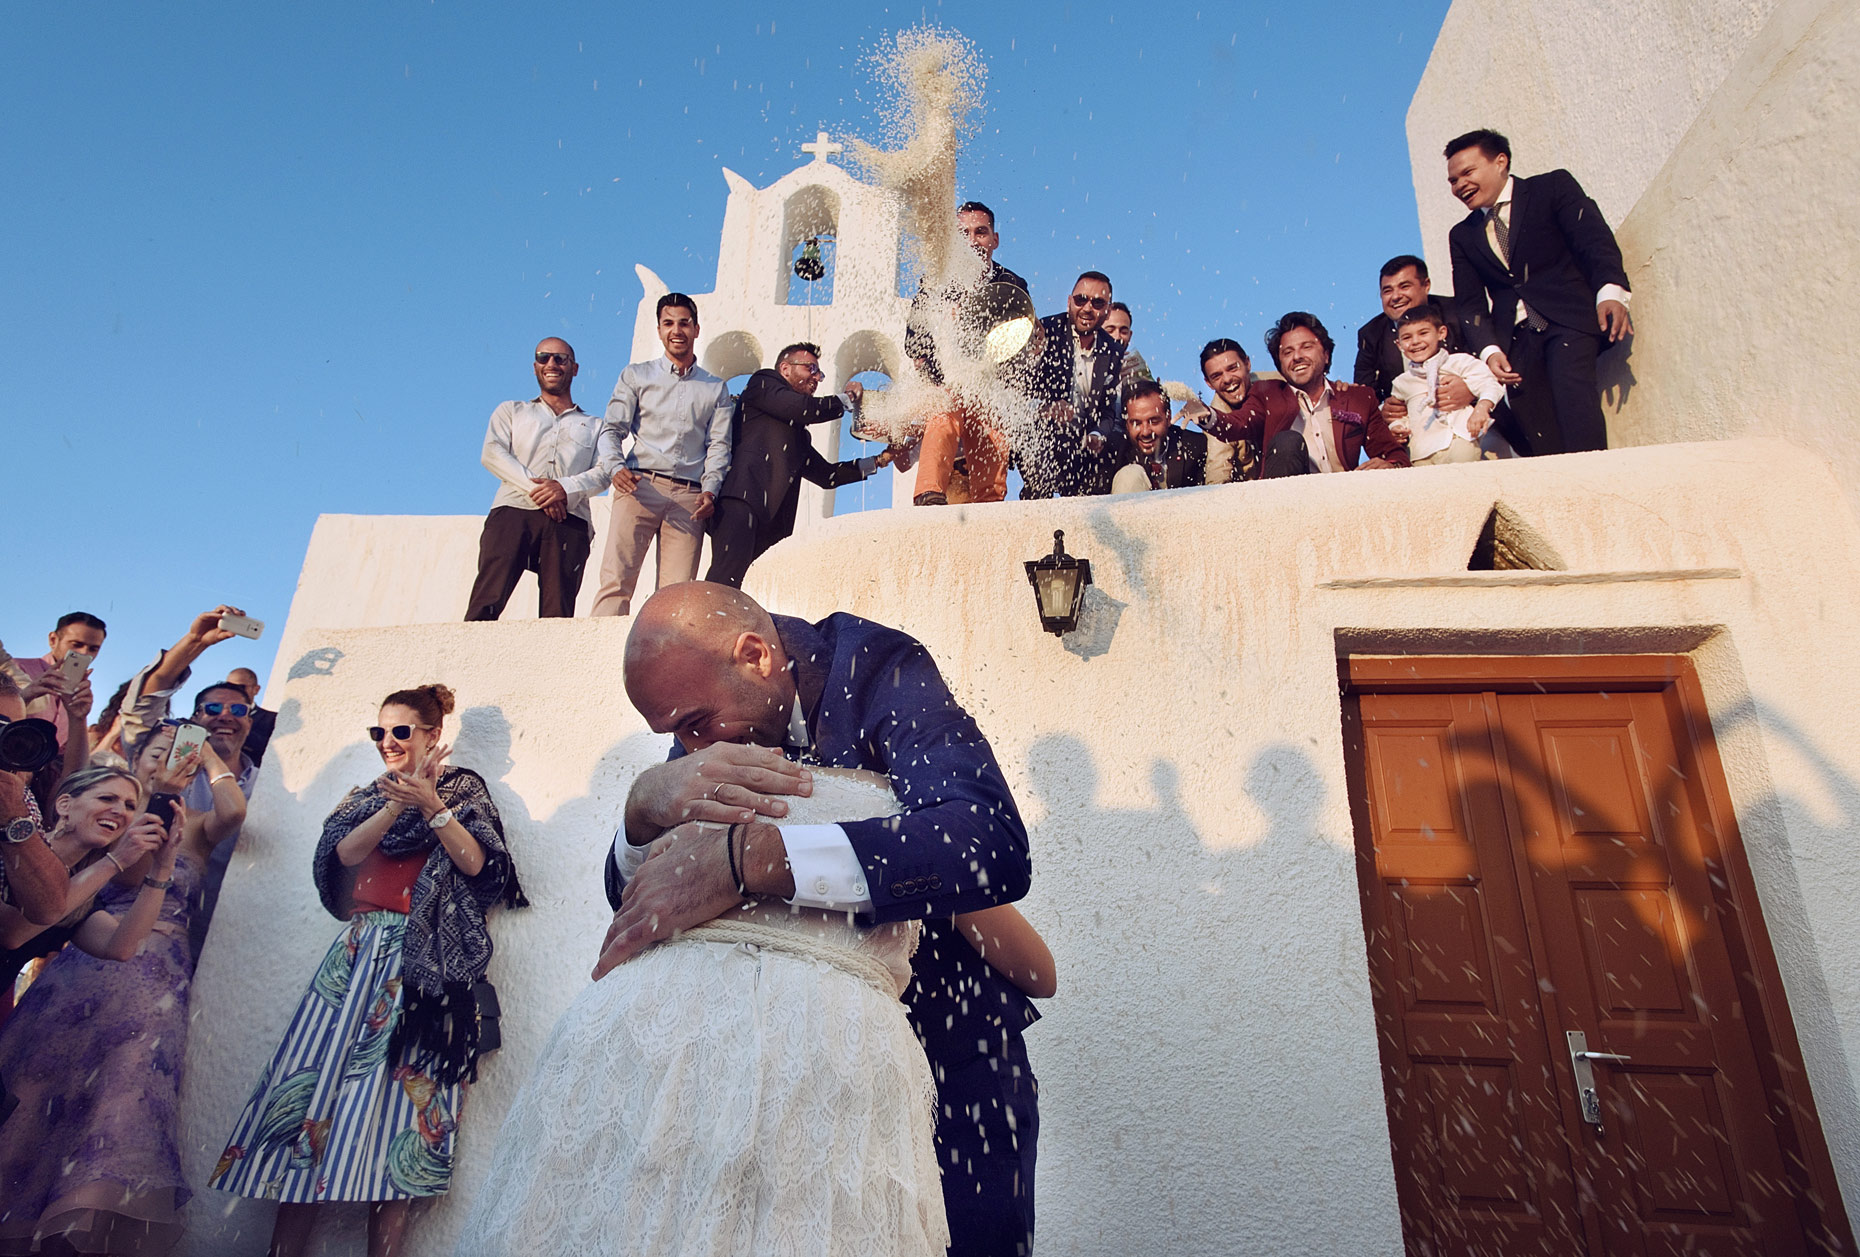 Ios island wedding at Agia Irini | γαμος Αγια Ειρηνη Ιος